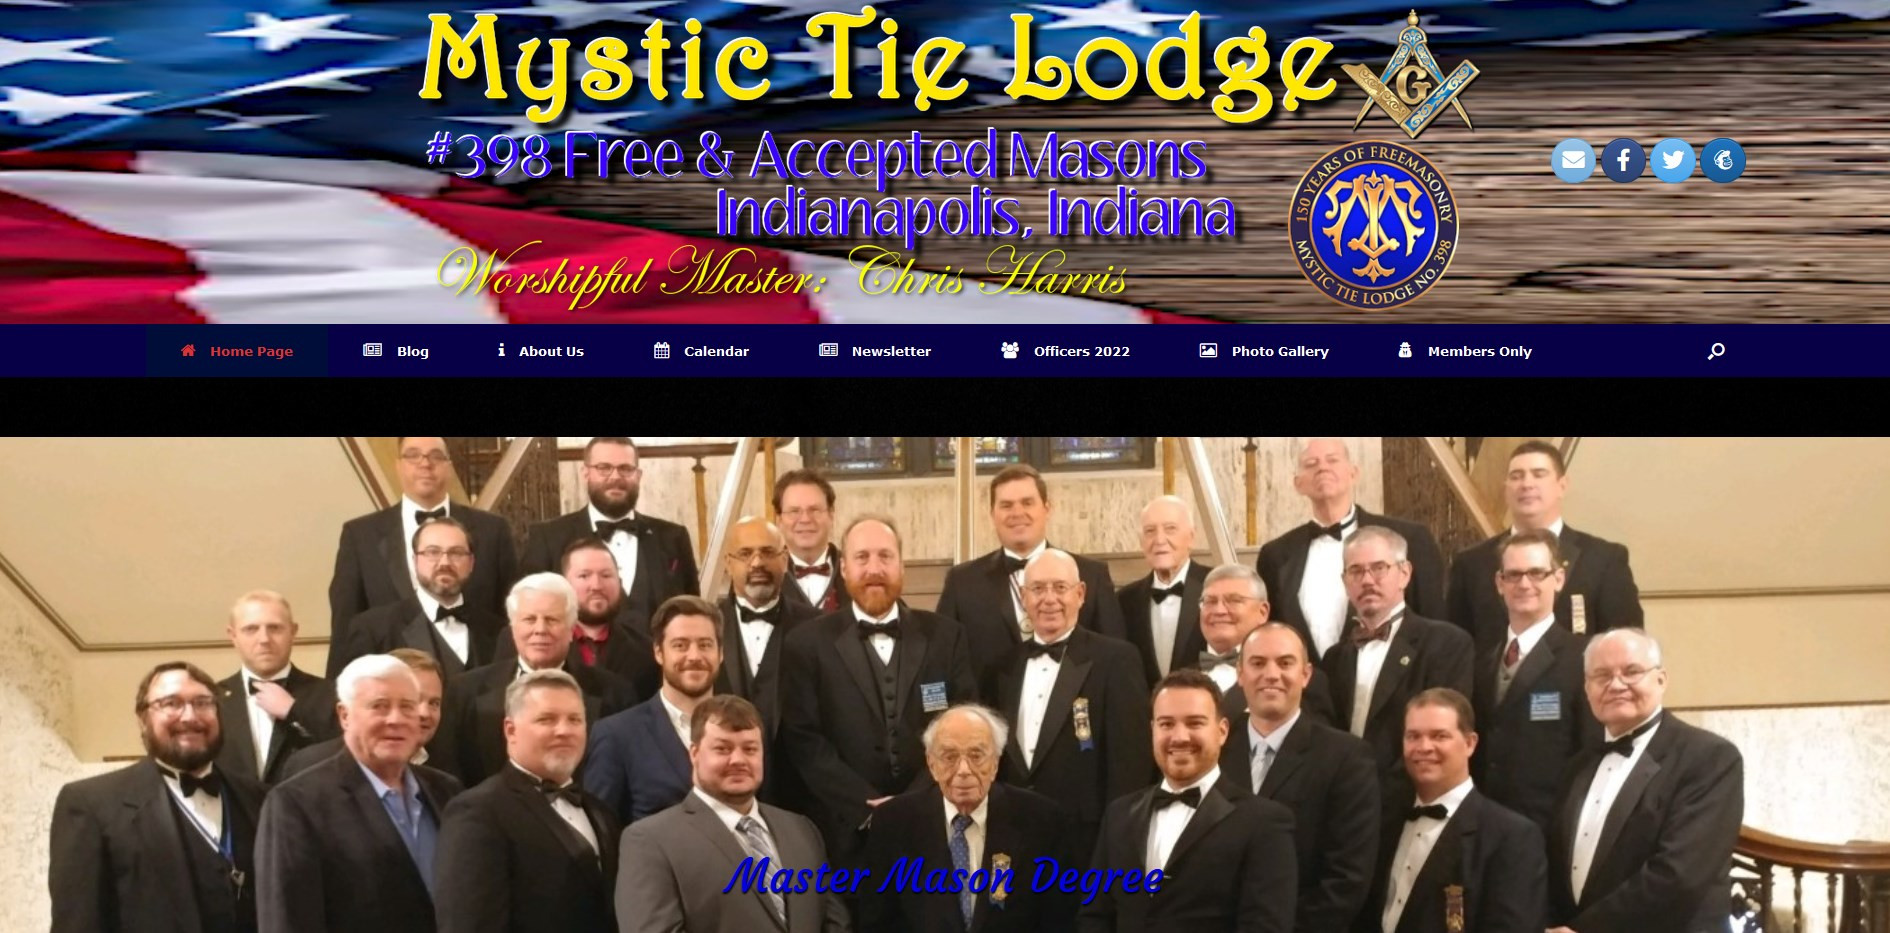 Mystic Tie Lodge